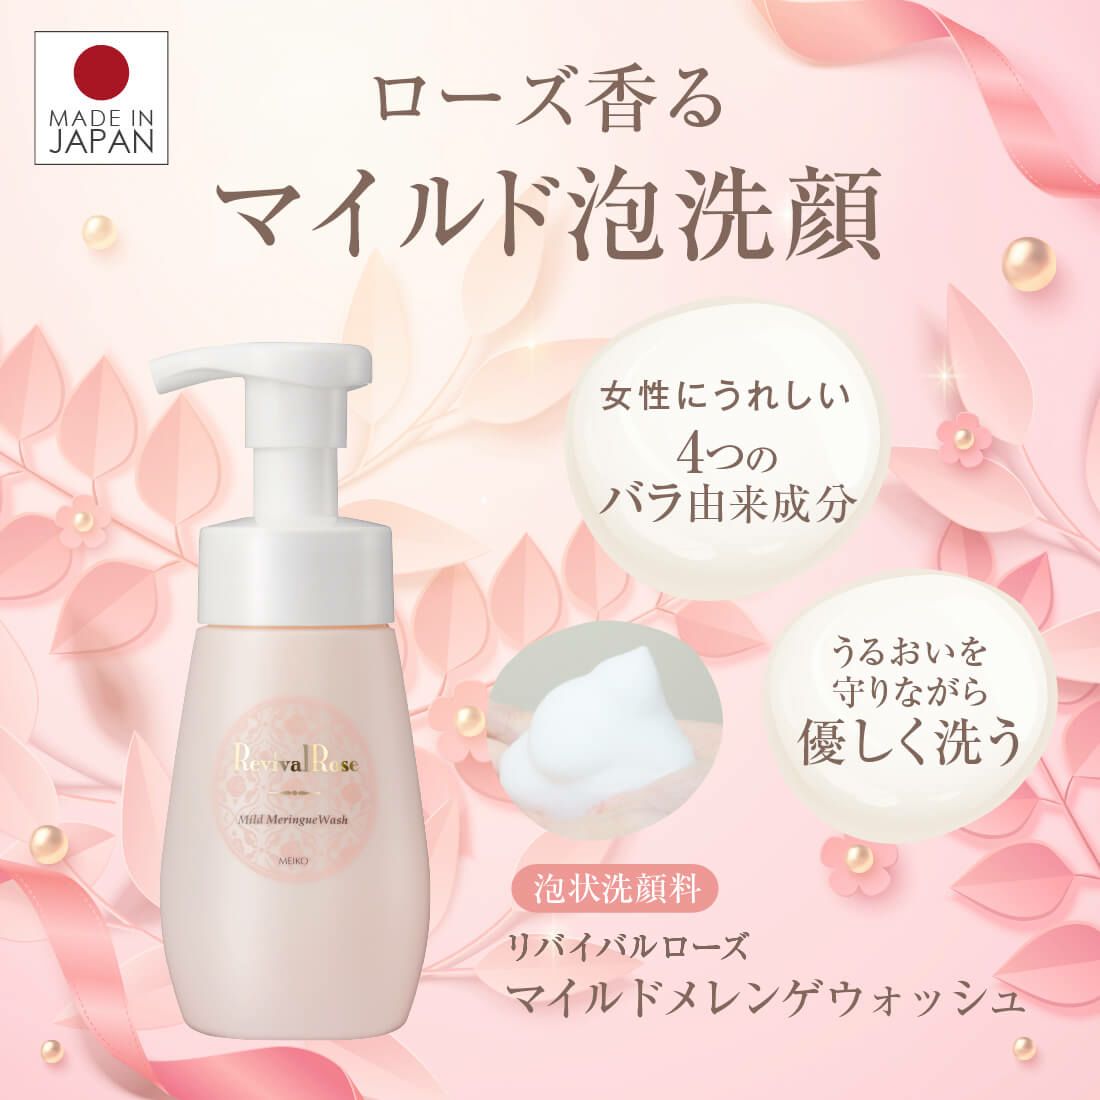 メイコー化粧品 泡洗顔フォーム リバイバルローズ マイルドメレンゲウォッシュ 200ml 日本製